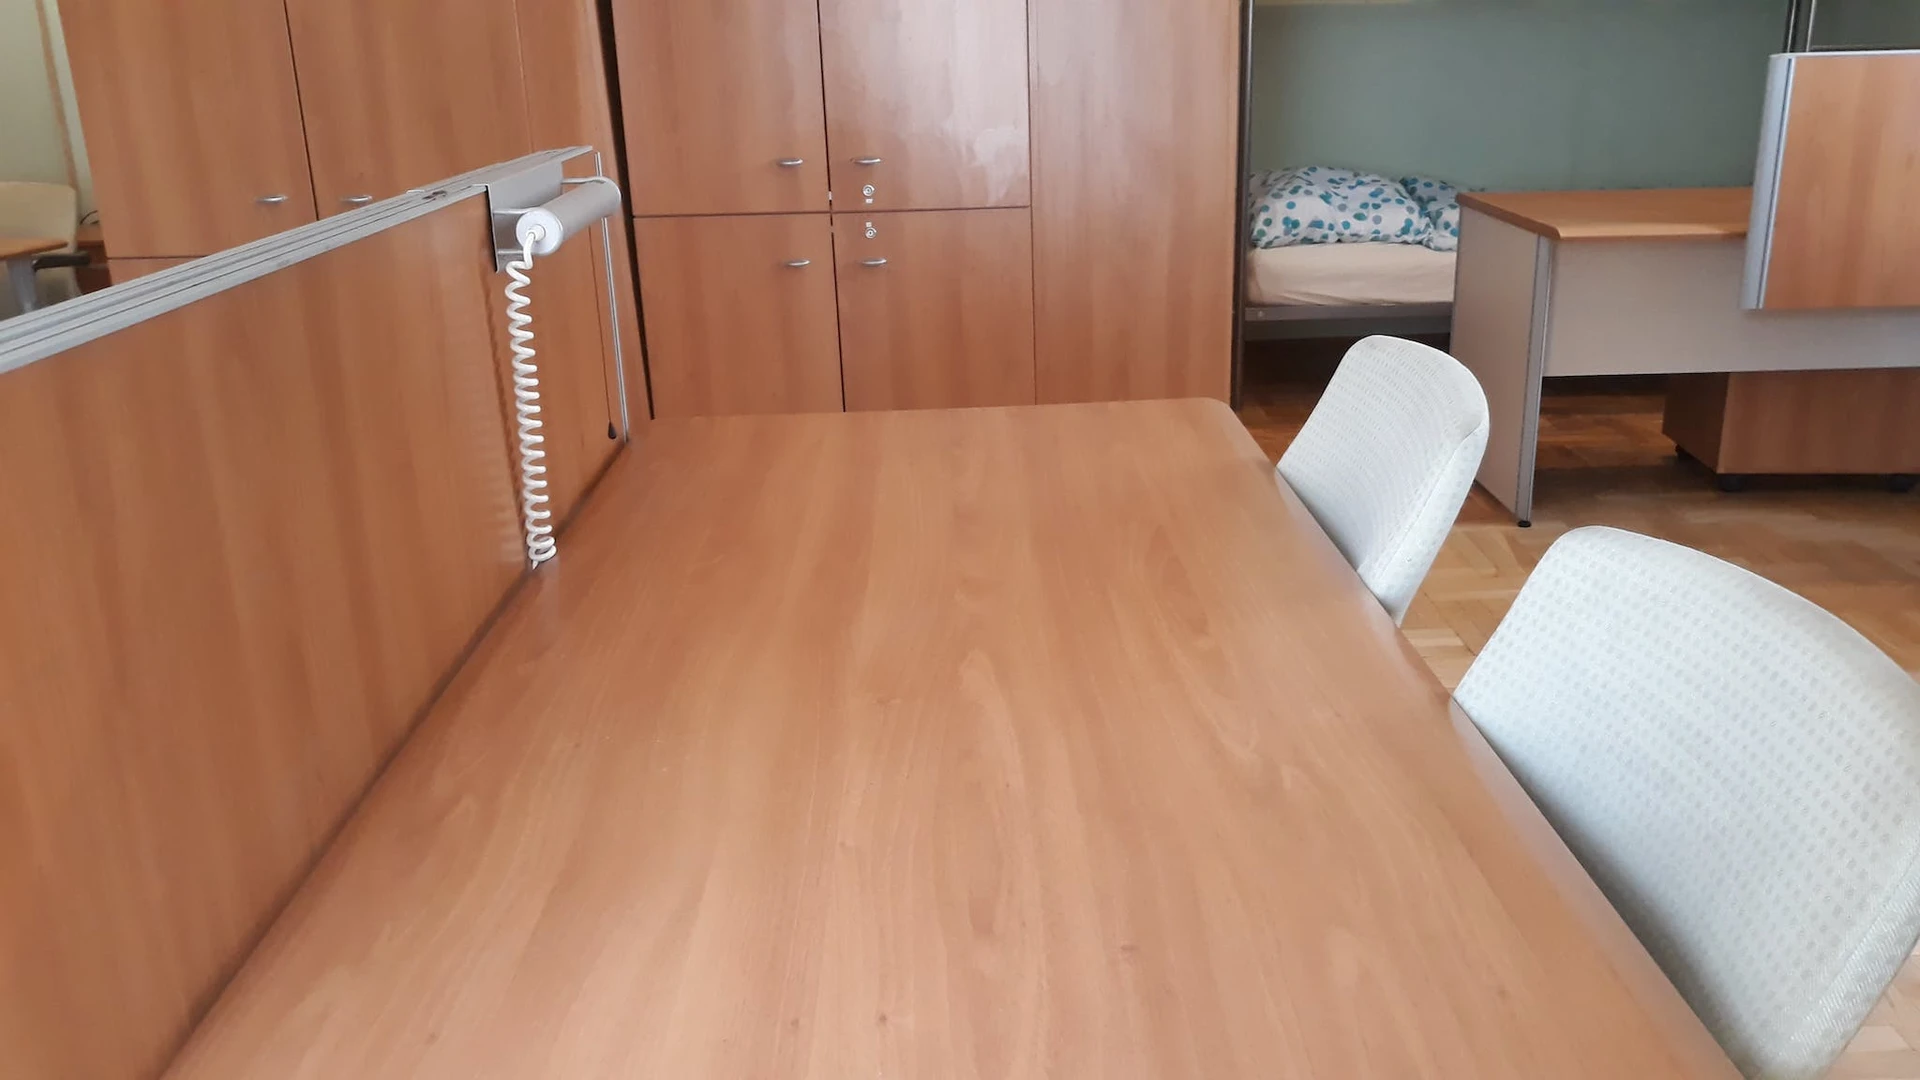 Habitación compartida con otro estudiante en Budapest